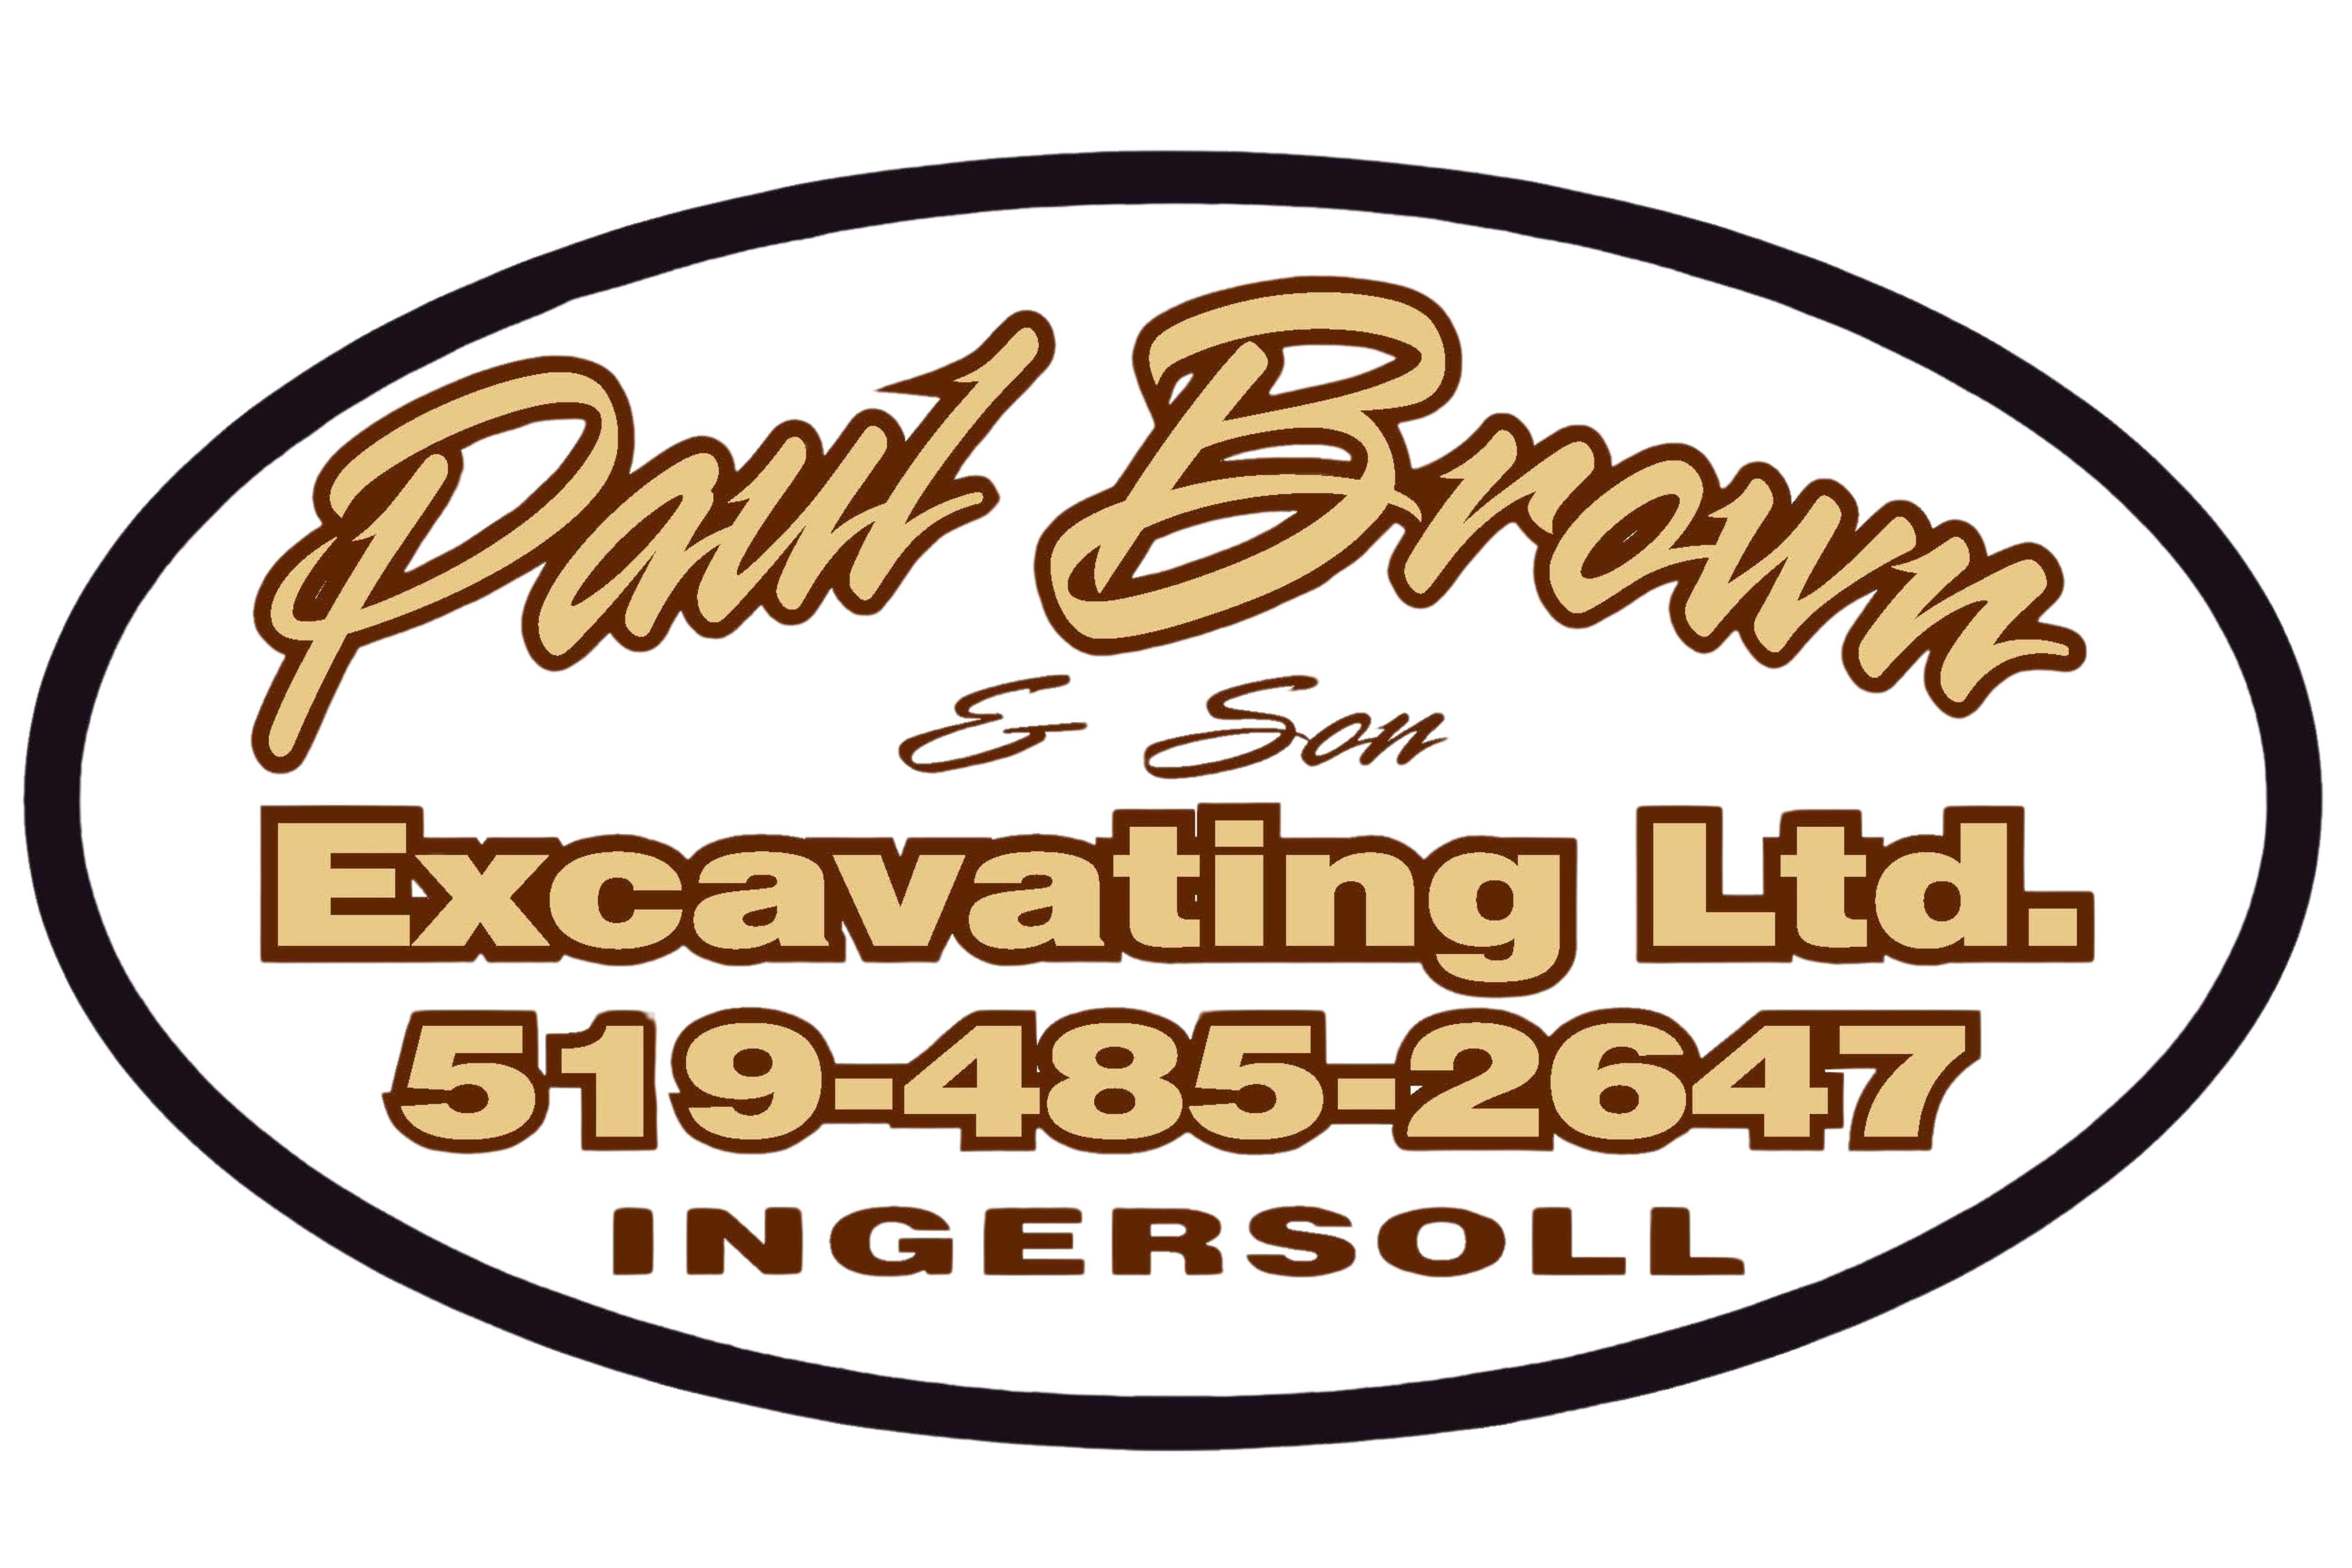 Paul Brown & Son Excavating Ltd.